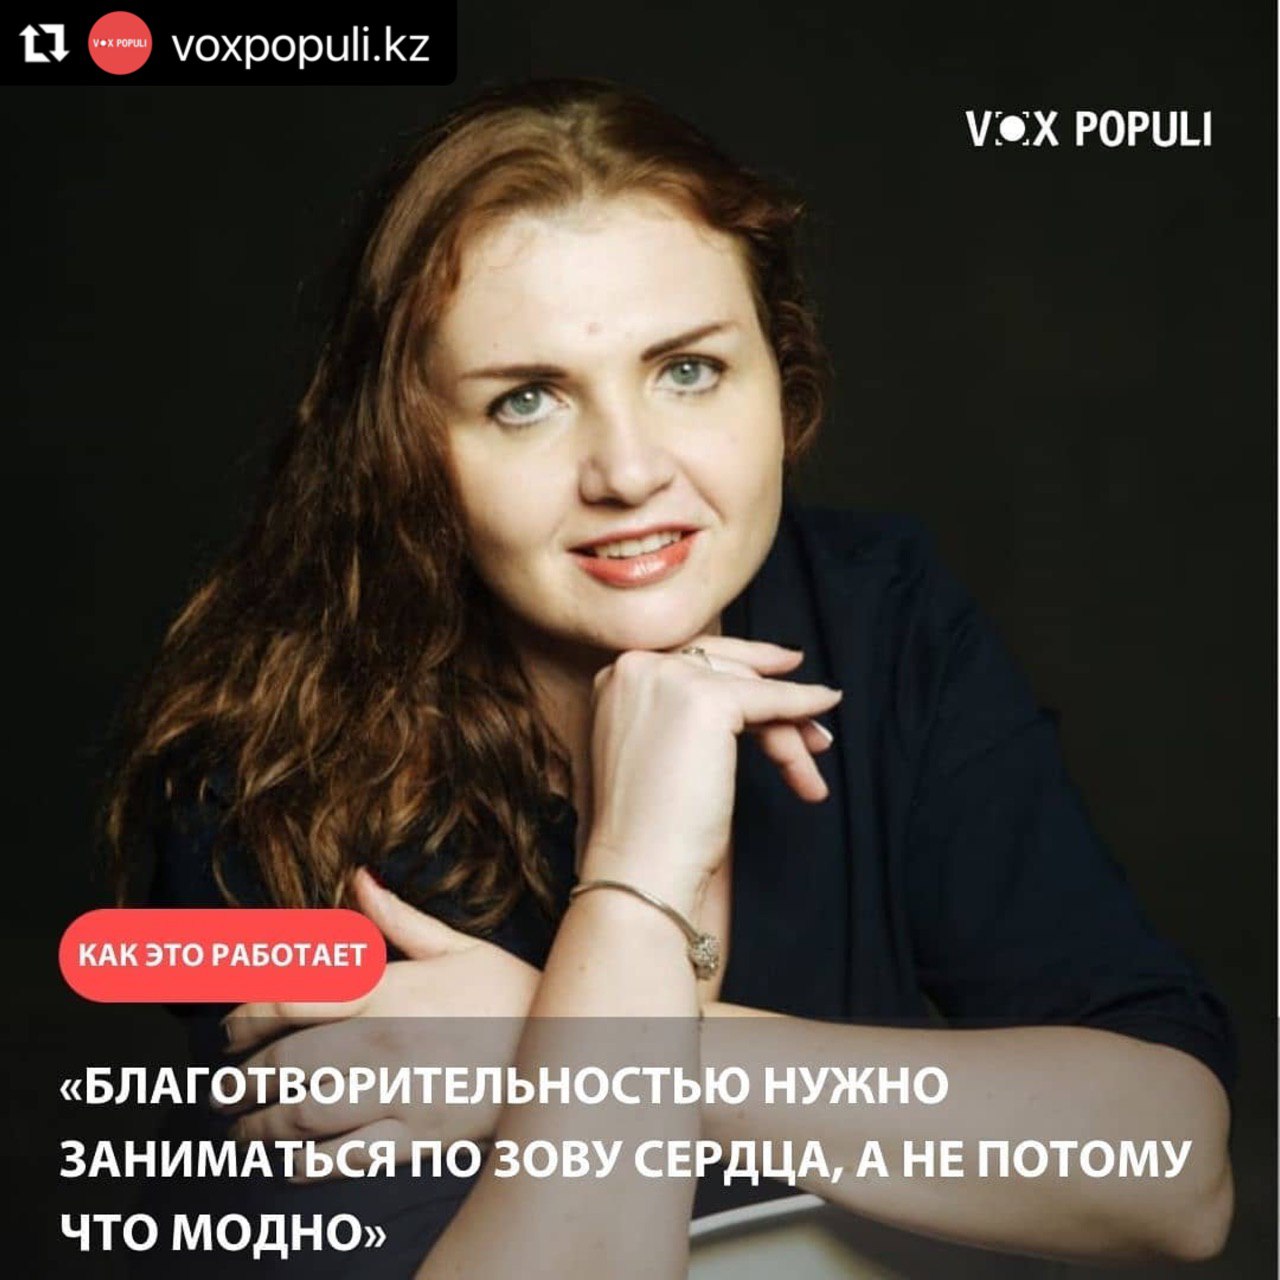 Интервью Натальи Комиссаровой порталу "Vox Populi"